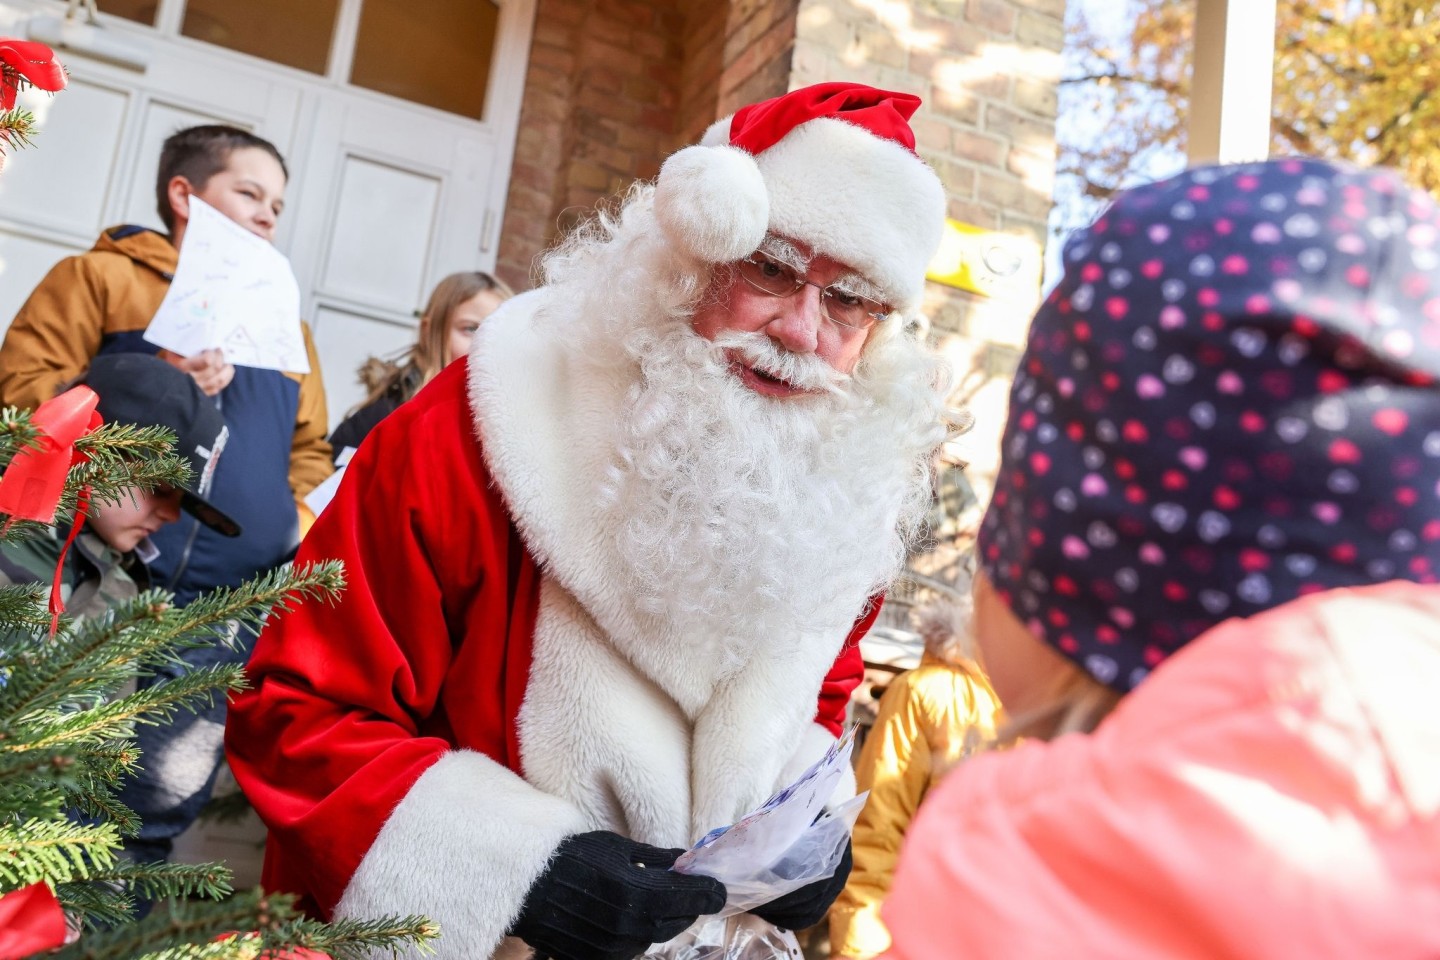 Der Weihnachtsmann im brandenburgischen Himmelpfort hat in diesem Jahr wieder Hunderttausende Weihnachtswünsche erhalten.